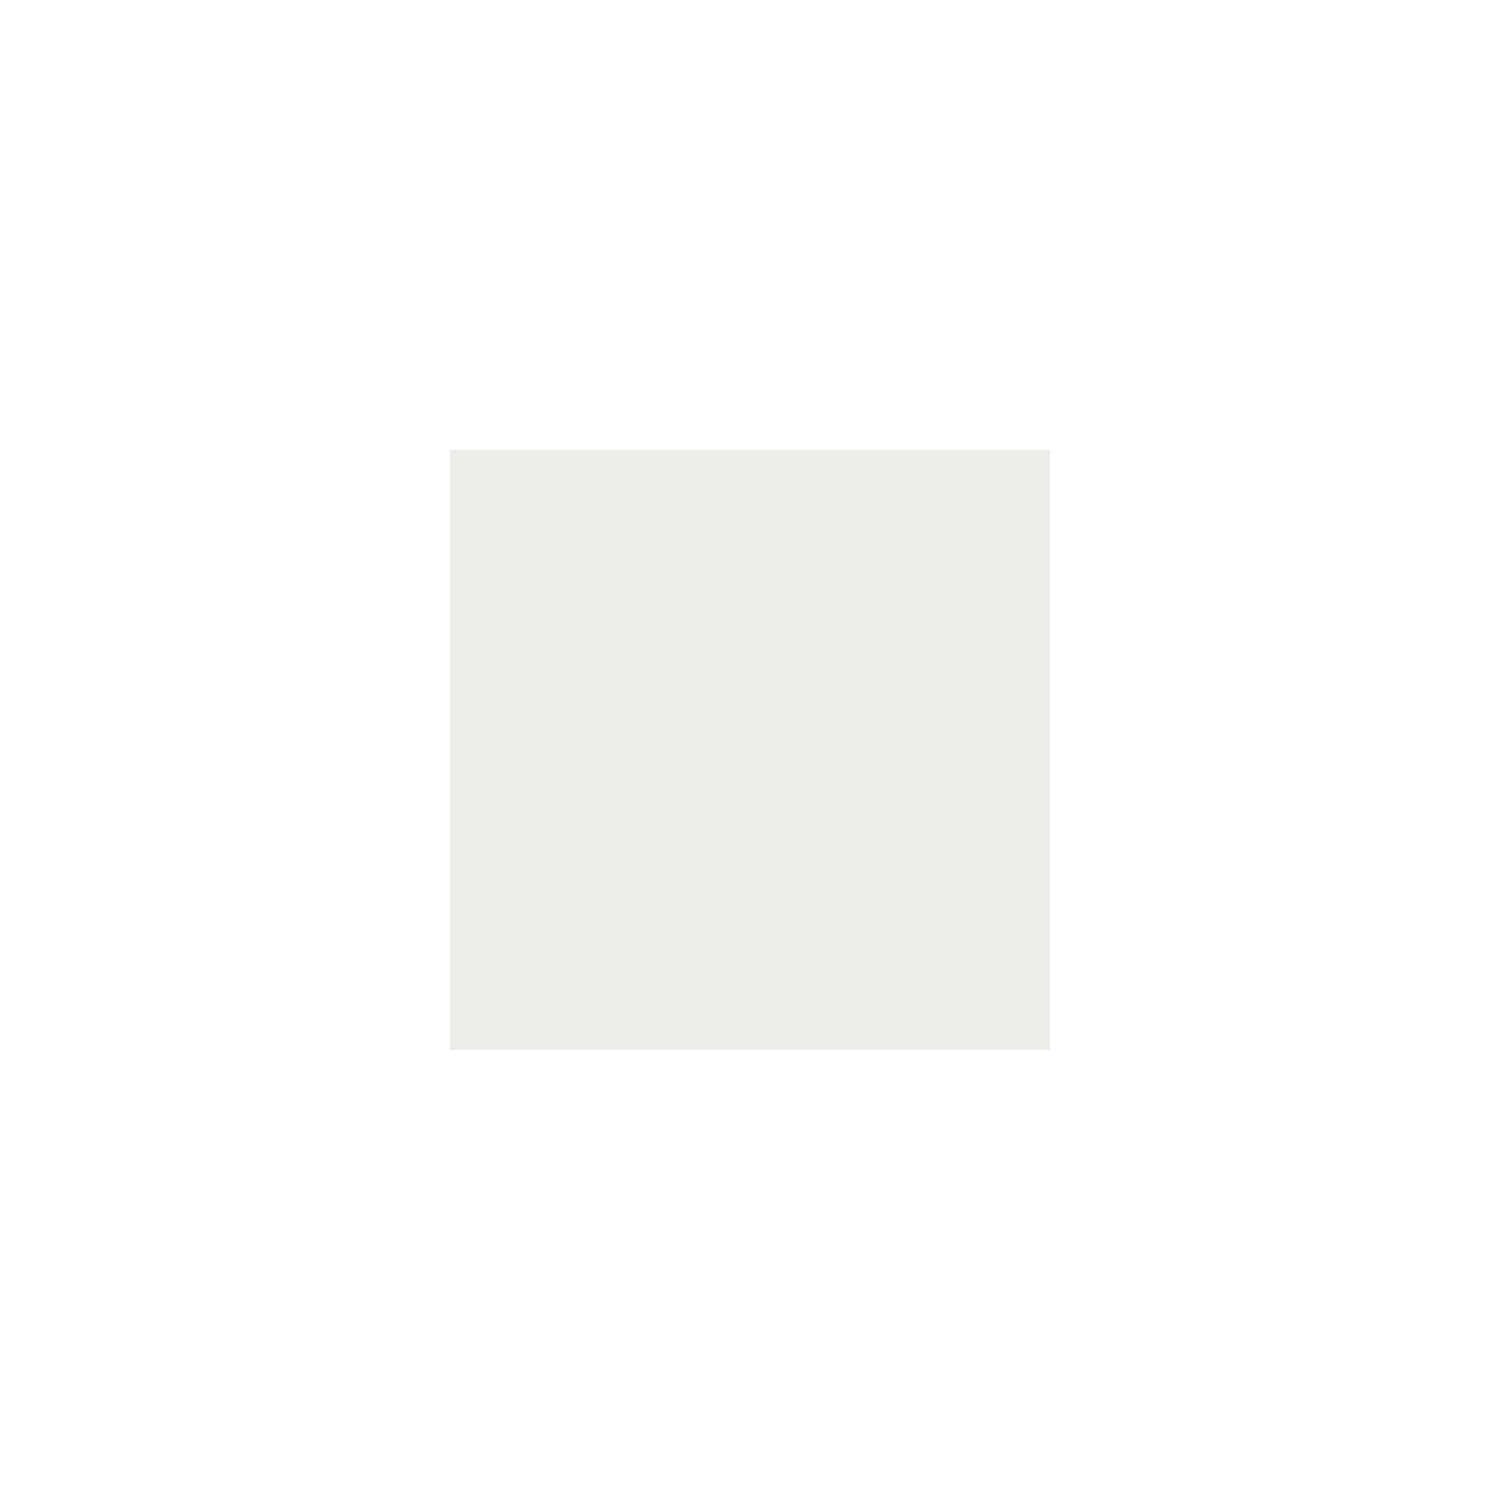 Itamoby Consolle allungabile 90x40/300 cm Diago Bianco Frassino telaio Bianco